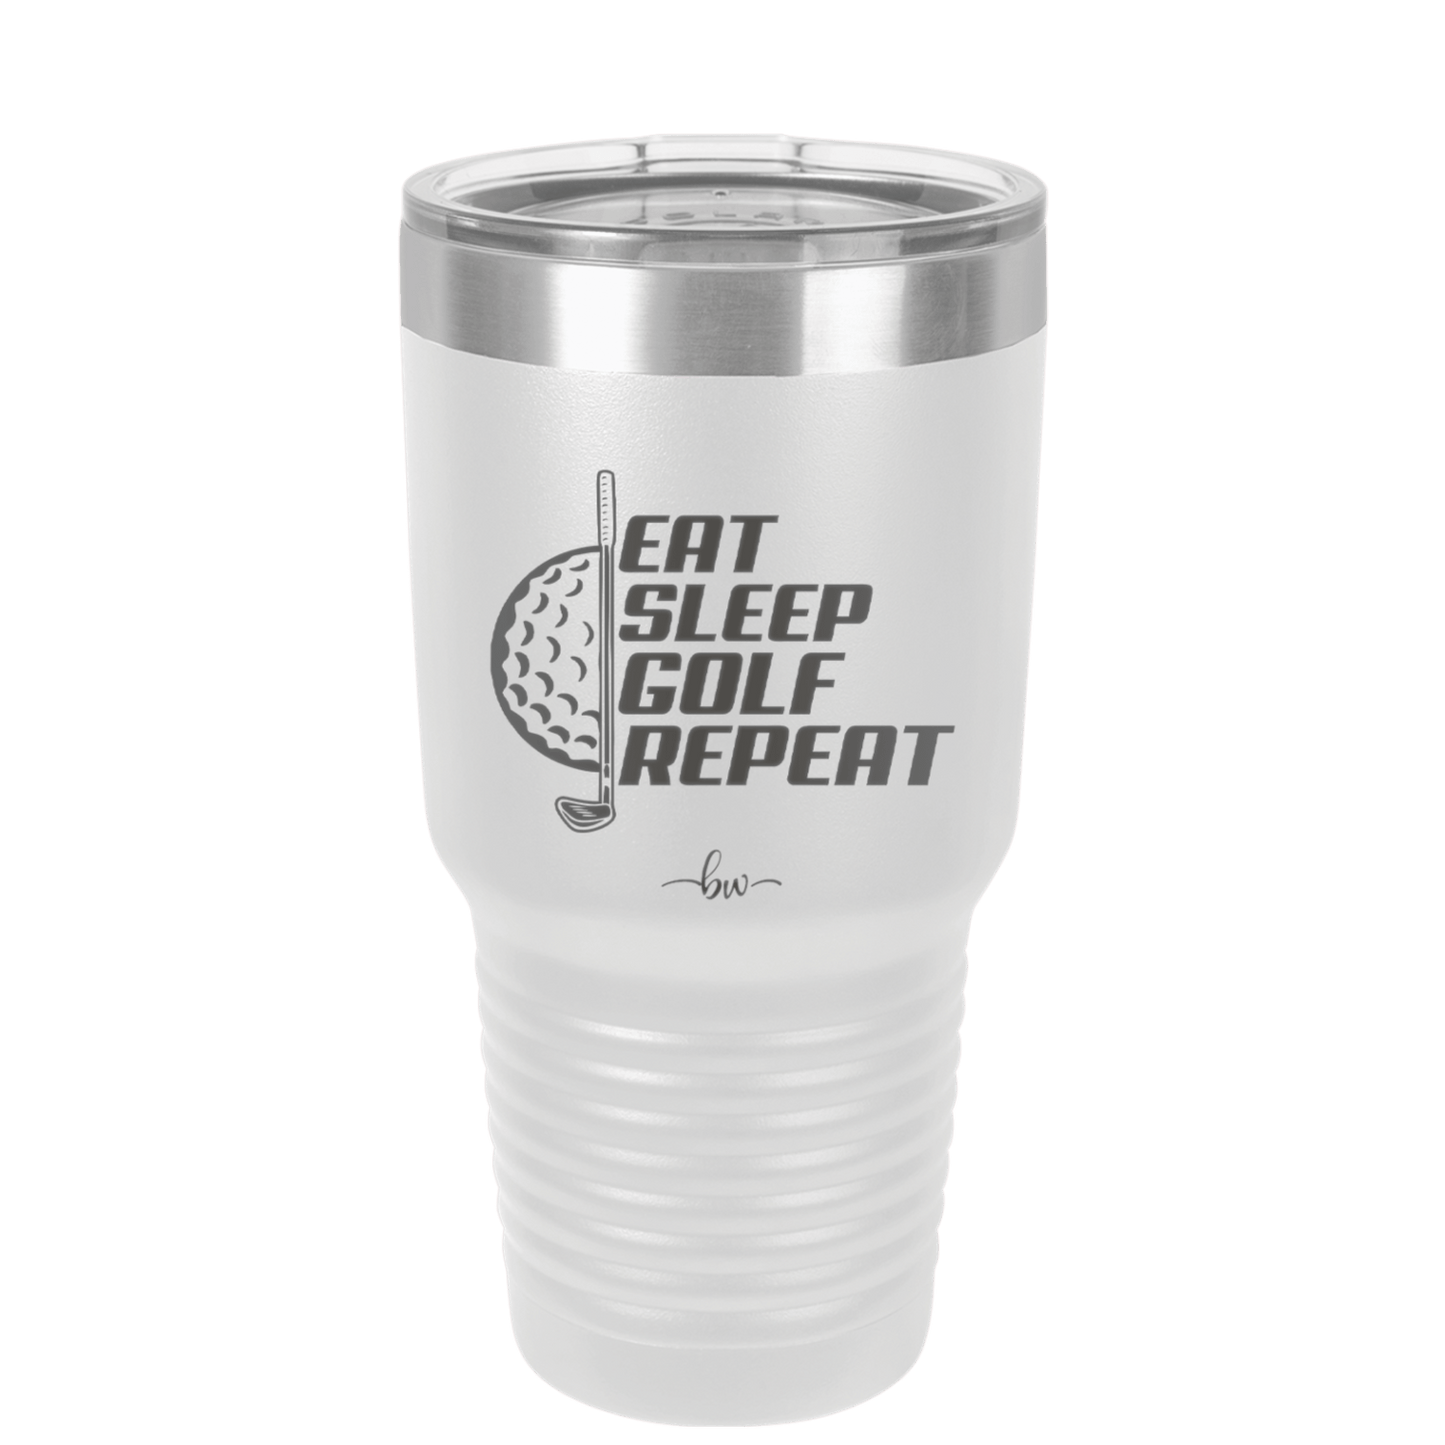 Eat Sleep Golf Repeat 2 - Laser Engraved Stainless Steel Drinkware - 1657 -